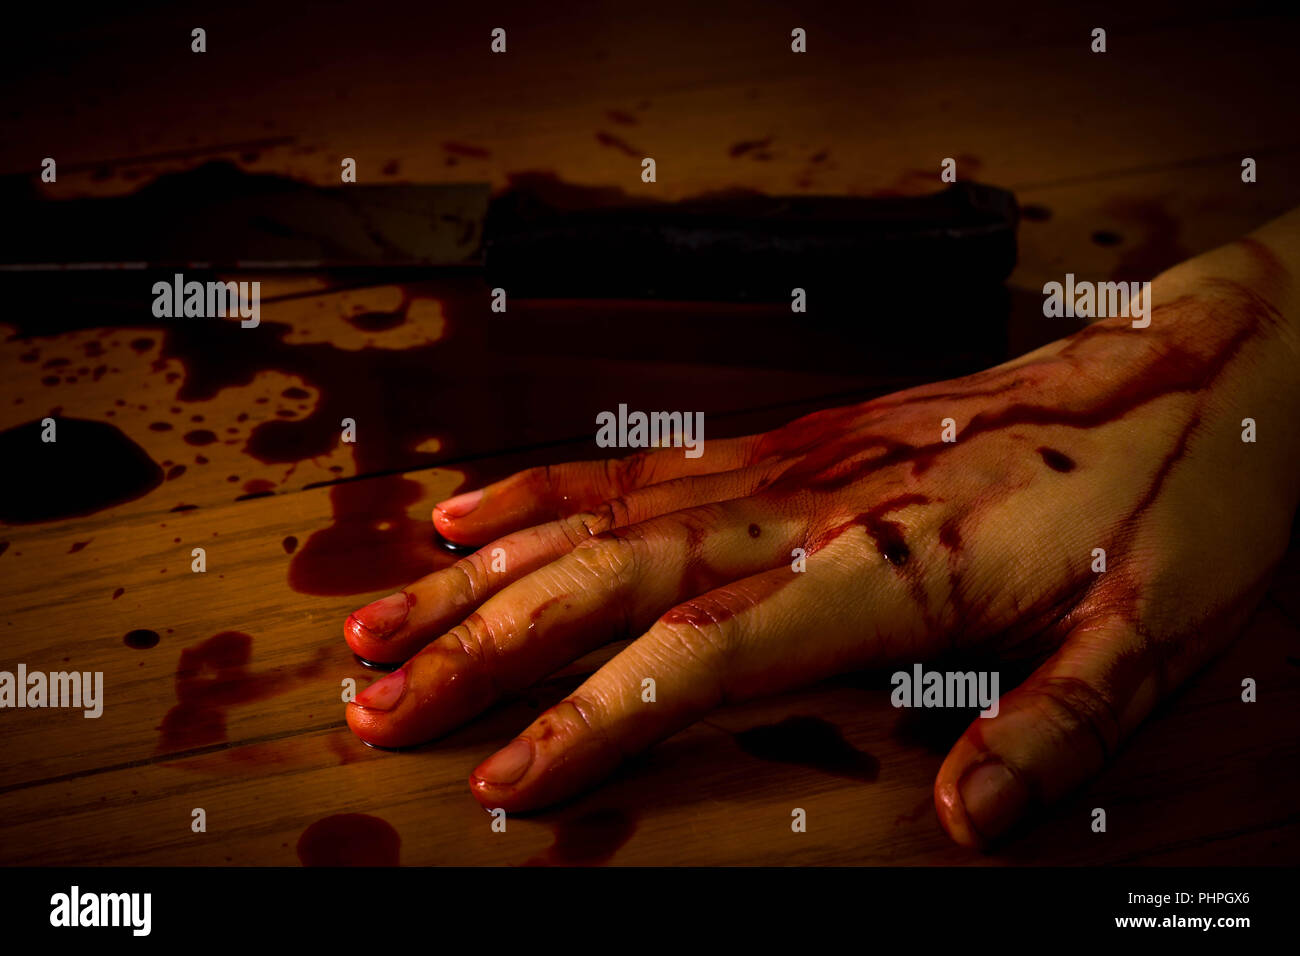 Omicidio, il suicidio o la scena del crimine. La mano di una persona morta intriso di sangue sul pavimento con coltello sullo sfondo. Foto Stock